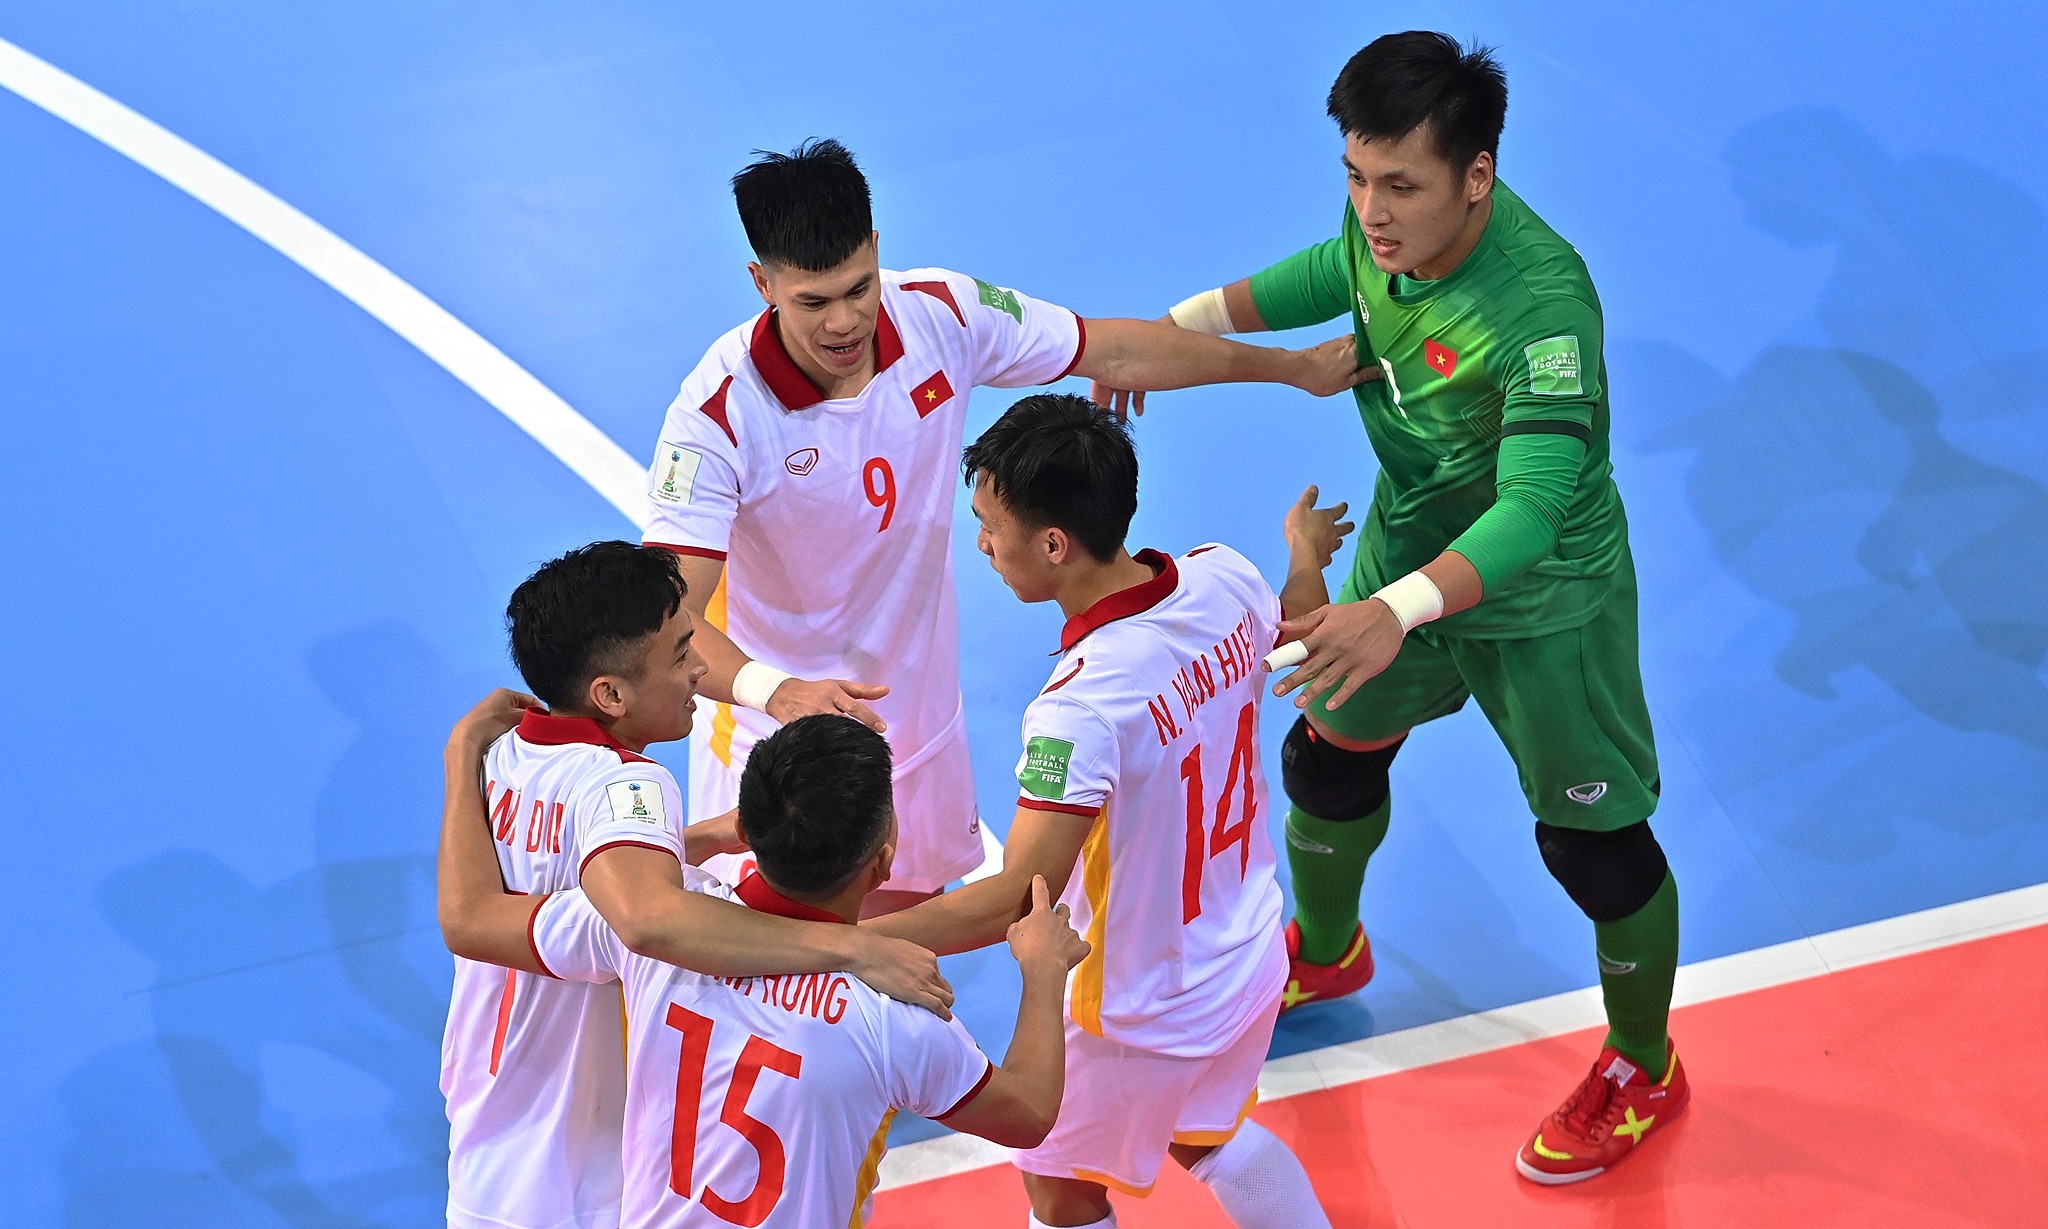 Nguyễn Văn Hiếu ghi bàn thắng quyết định cho tuyển Việt Nam